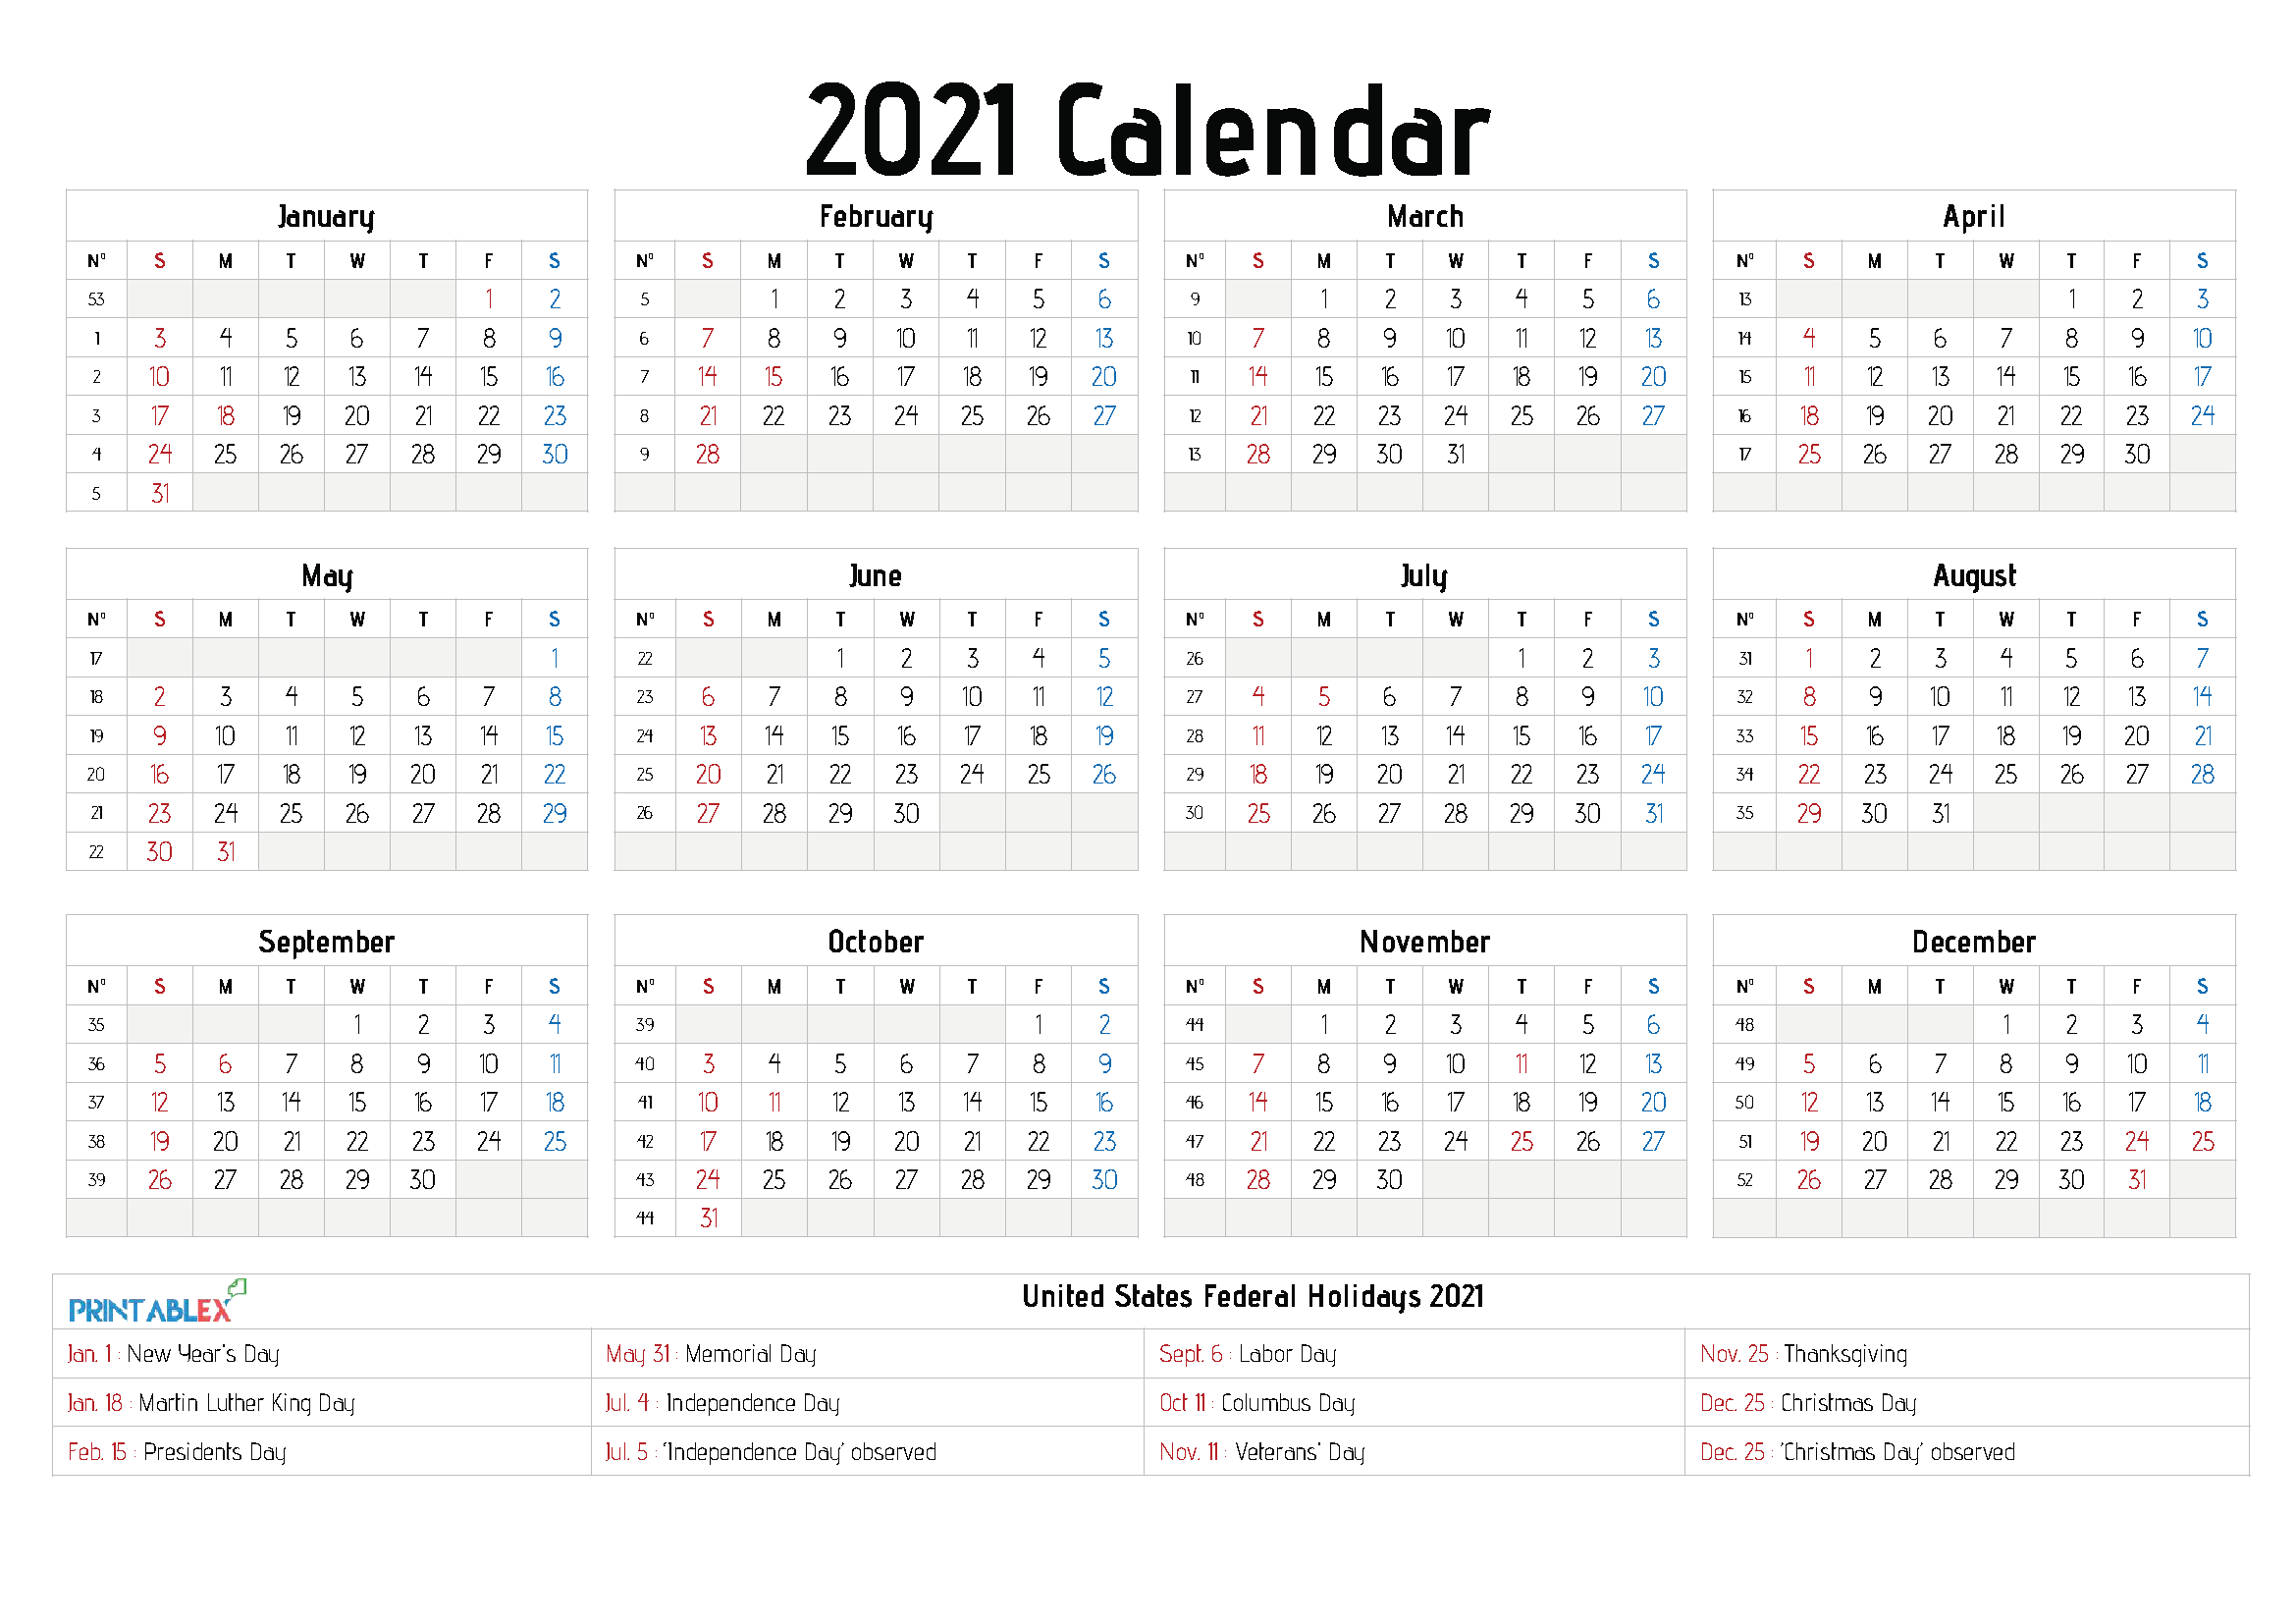 2021 Calendars With Holidays Printable  Printable Calendar for Calendar 2021 With Holidays